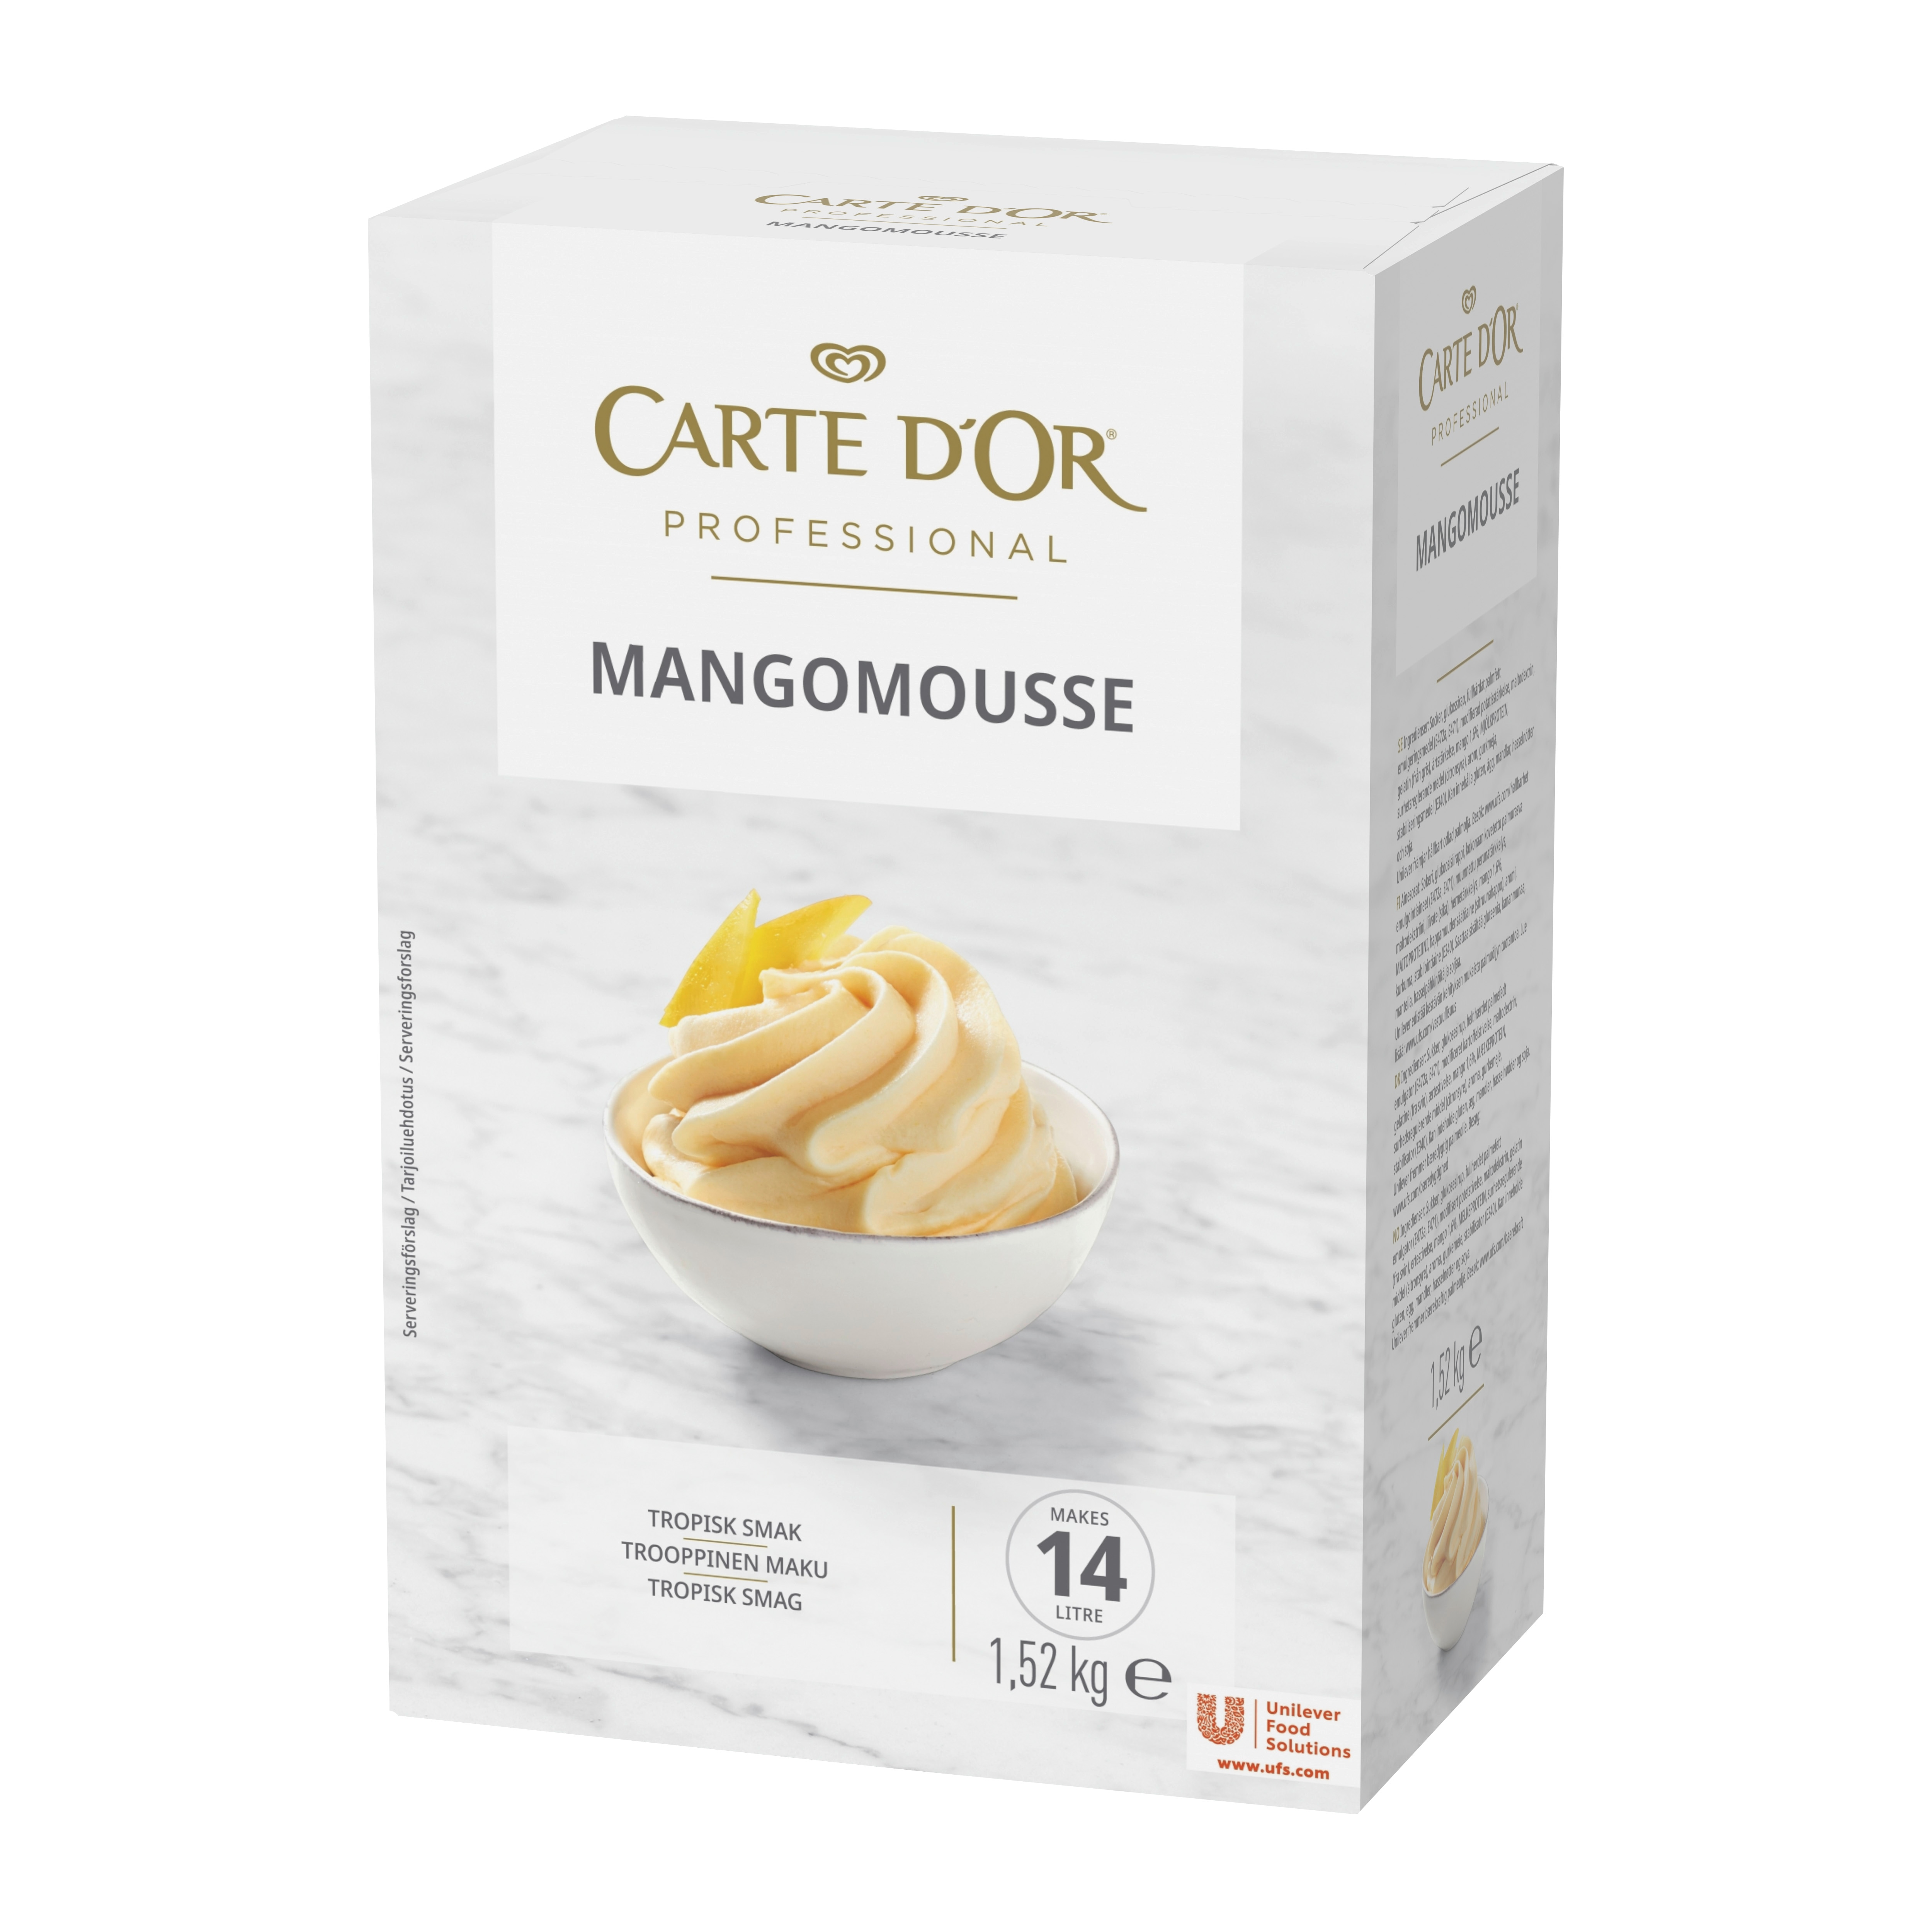 CARTE D'OR Mangomousse 1 x 1,52 kg